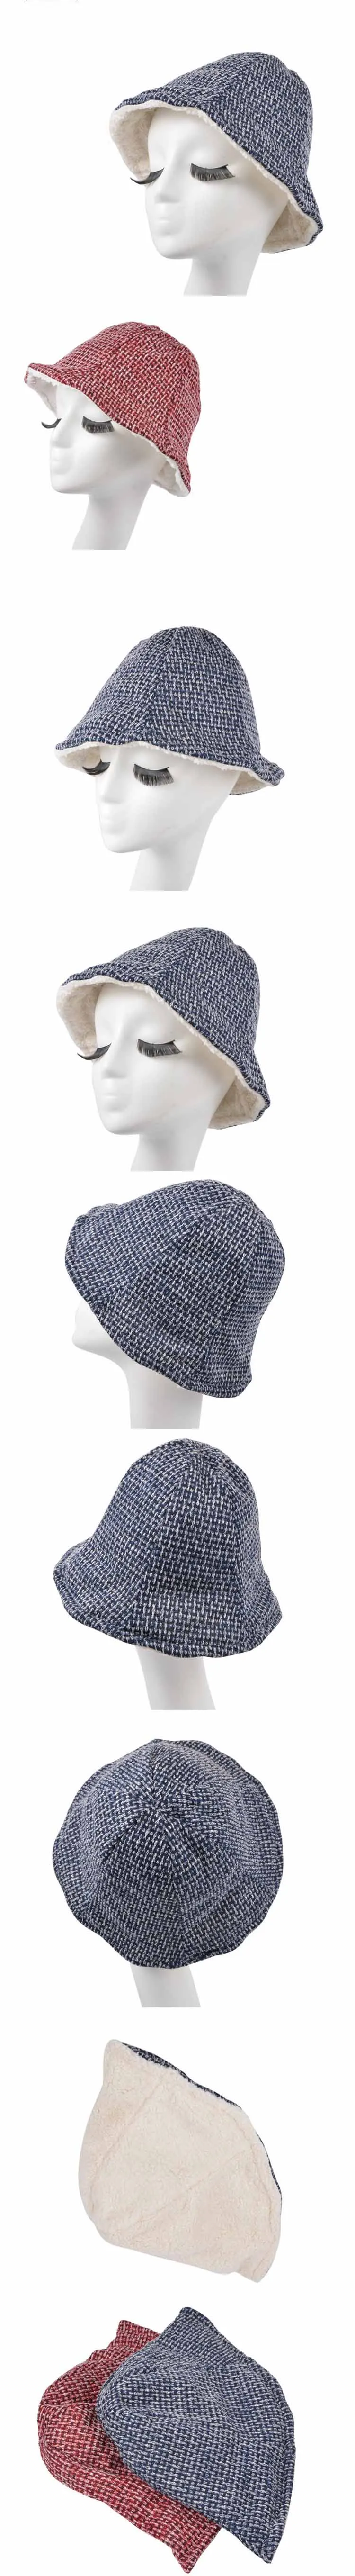 Новая зимняя вязаная Панама, классические клетчатые теплые шапки бини для женщин, шапки бини